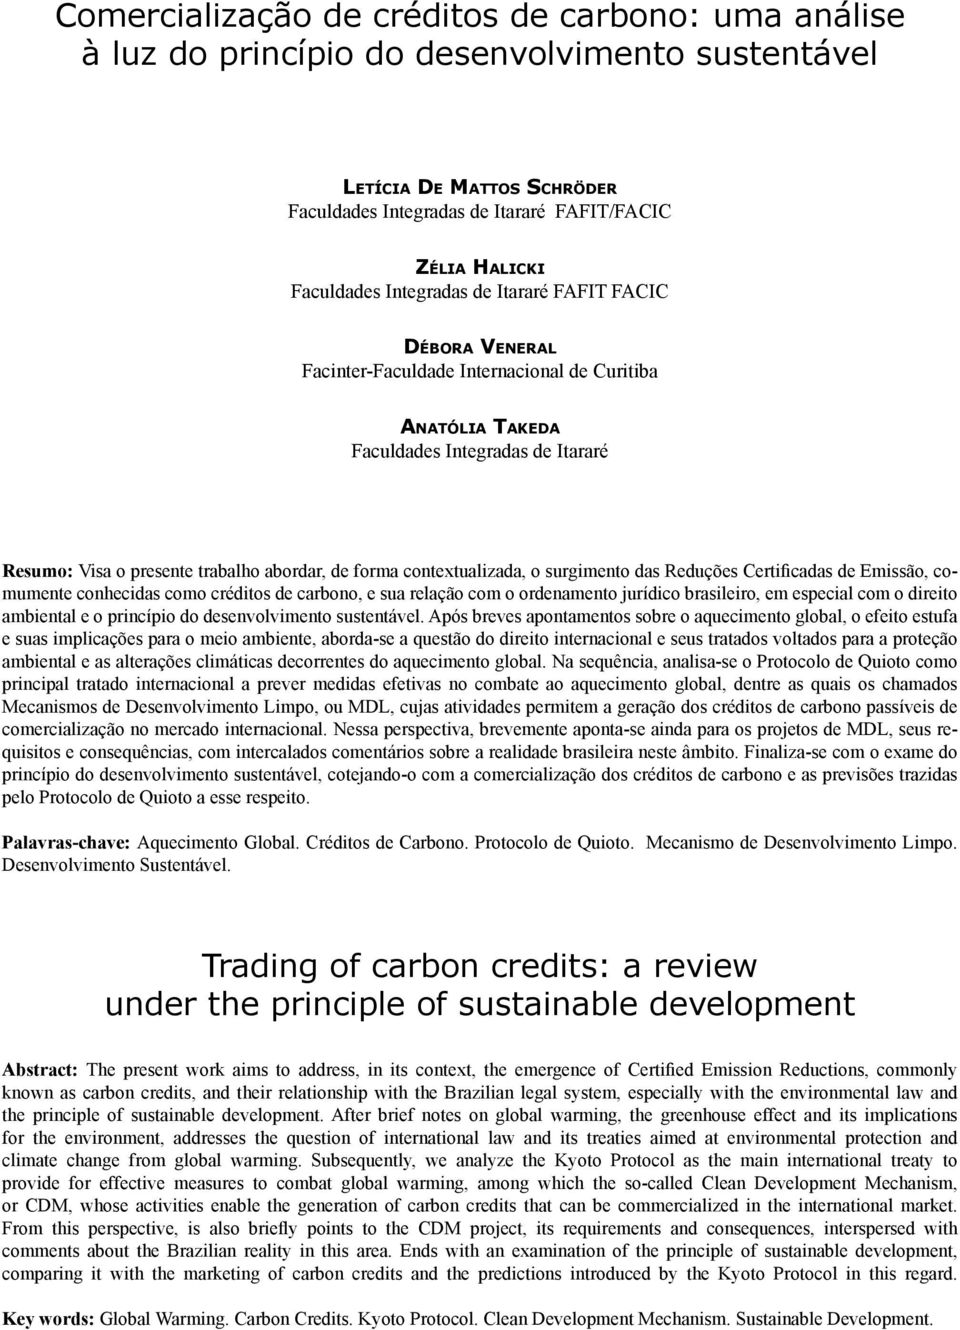 presente trabalho abordar, de forma contextualizada, o surgimento das Reduções Certificadas de Emissão, comumente conhecidas como créditos de carbono, e sua relação com o ordenamento jurídico